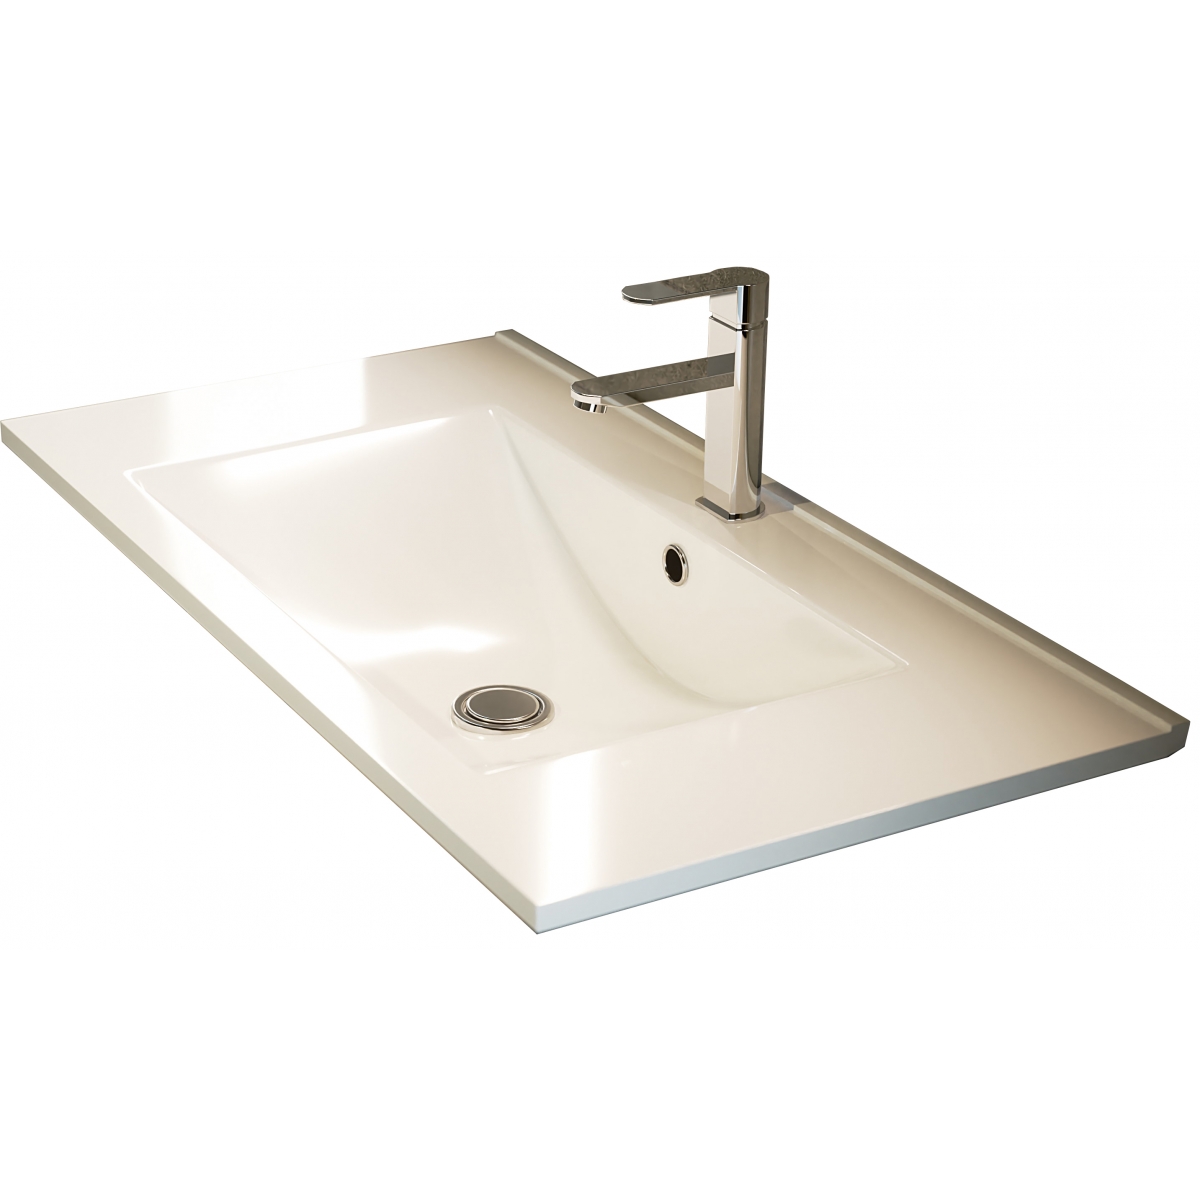 Fotos ambiente de Mueble de baño suspendido Bolton de 100 cm de ancho color Hiberian con lavabo integrado [54011]